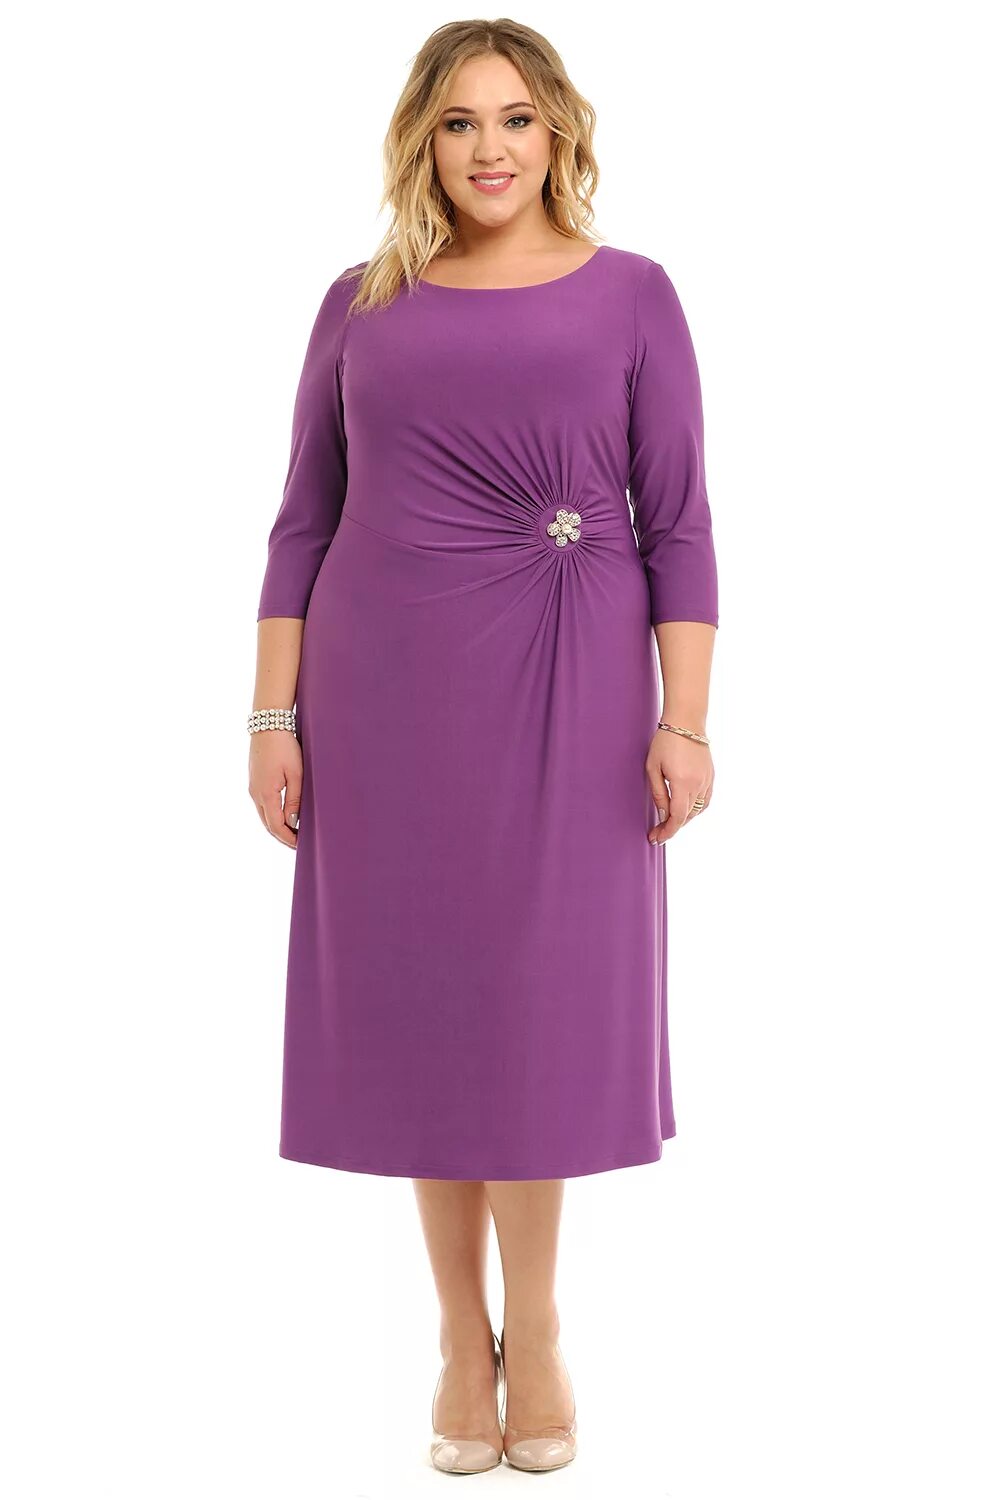 Вайлдберриз большие размеры. Нарядные платья для женщин. Сиреневое платье для полных женщин. Фиолетовое платье для полных. Фиолетовое платье для полных женщин.